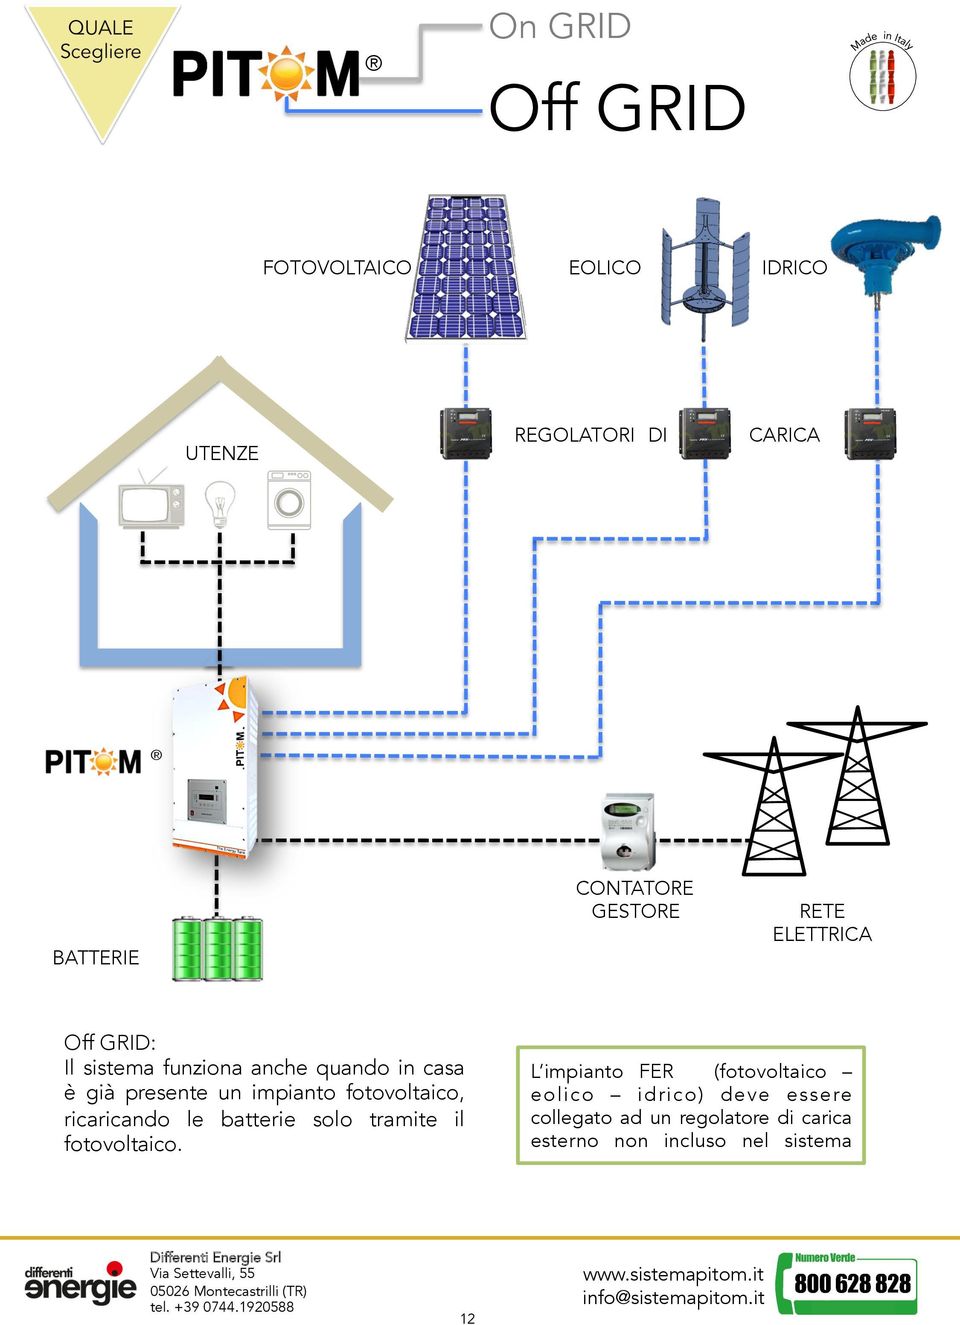 impianto fotovoltaico, ricaricando le batterie solo tramite il fotovoltaico.